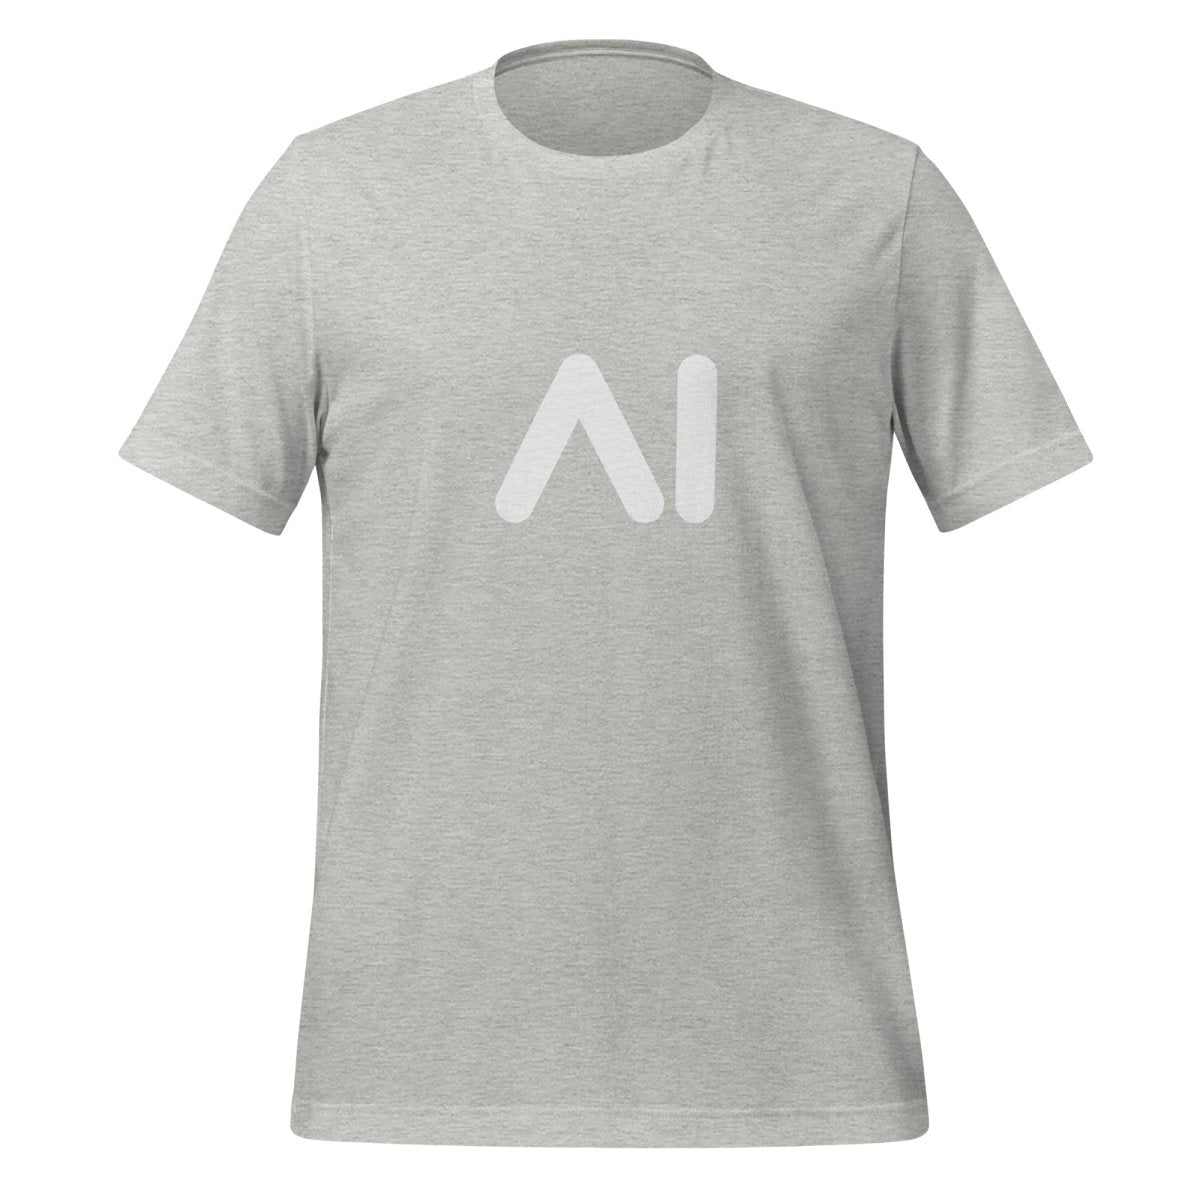 AI Logo T - Shirt 2 (unisex) - Athletic Heather - AI Store